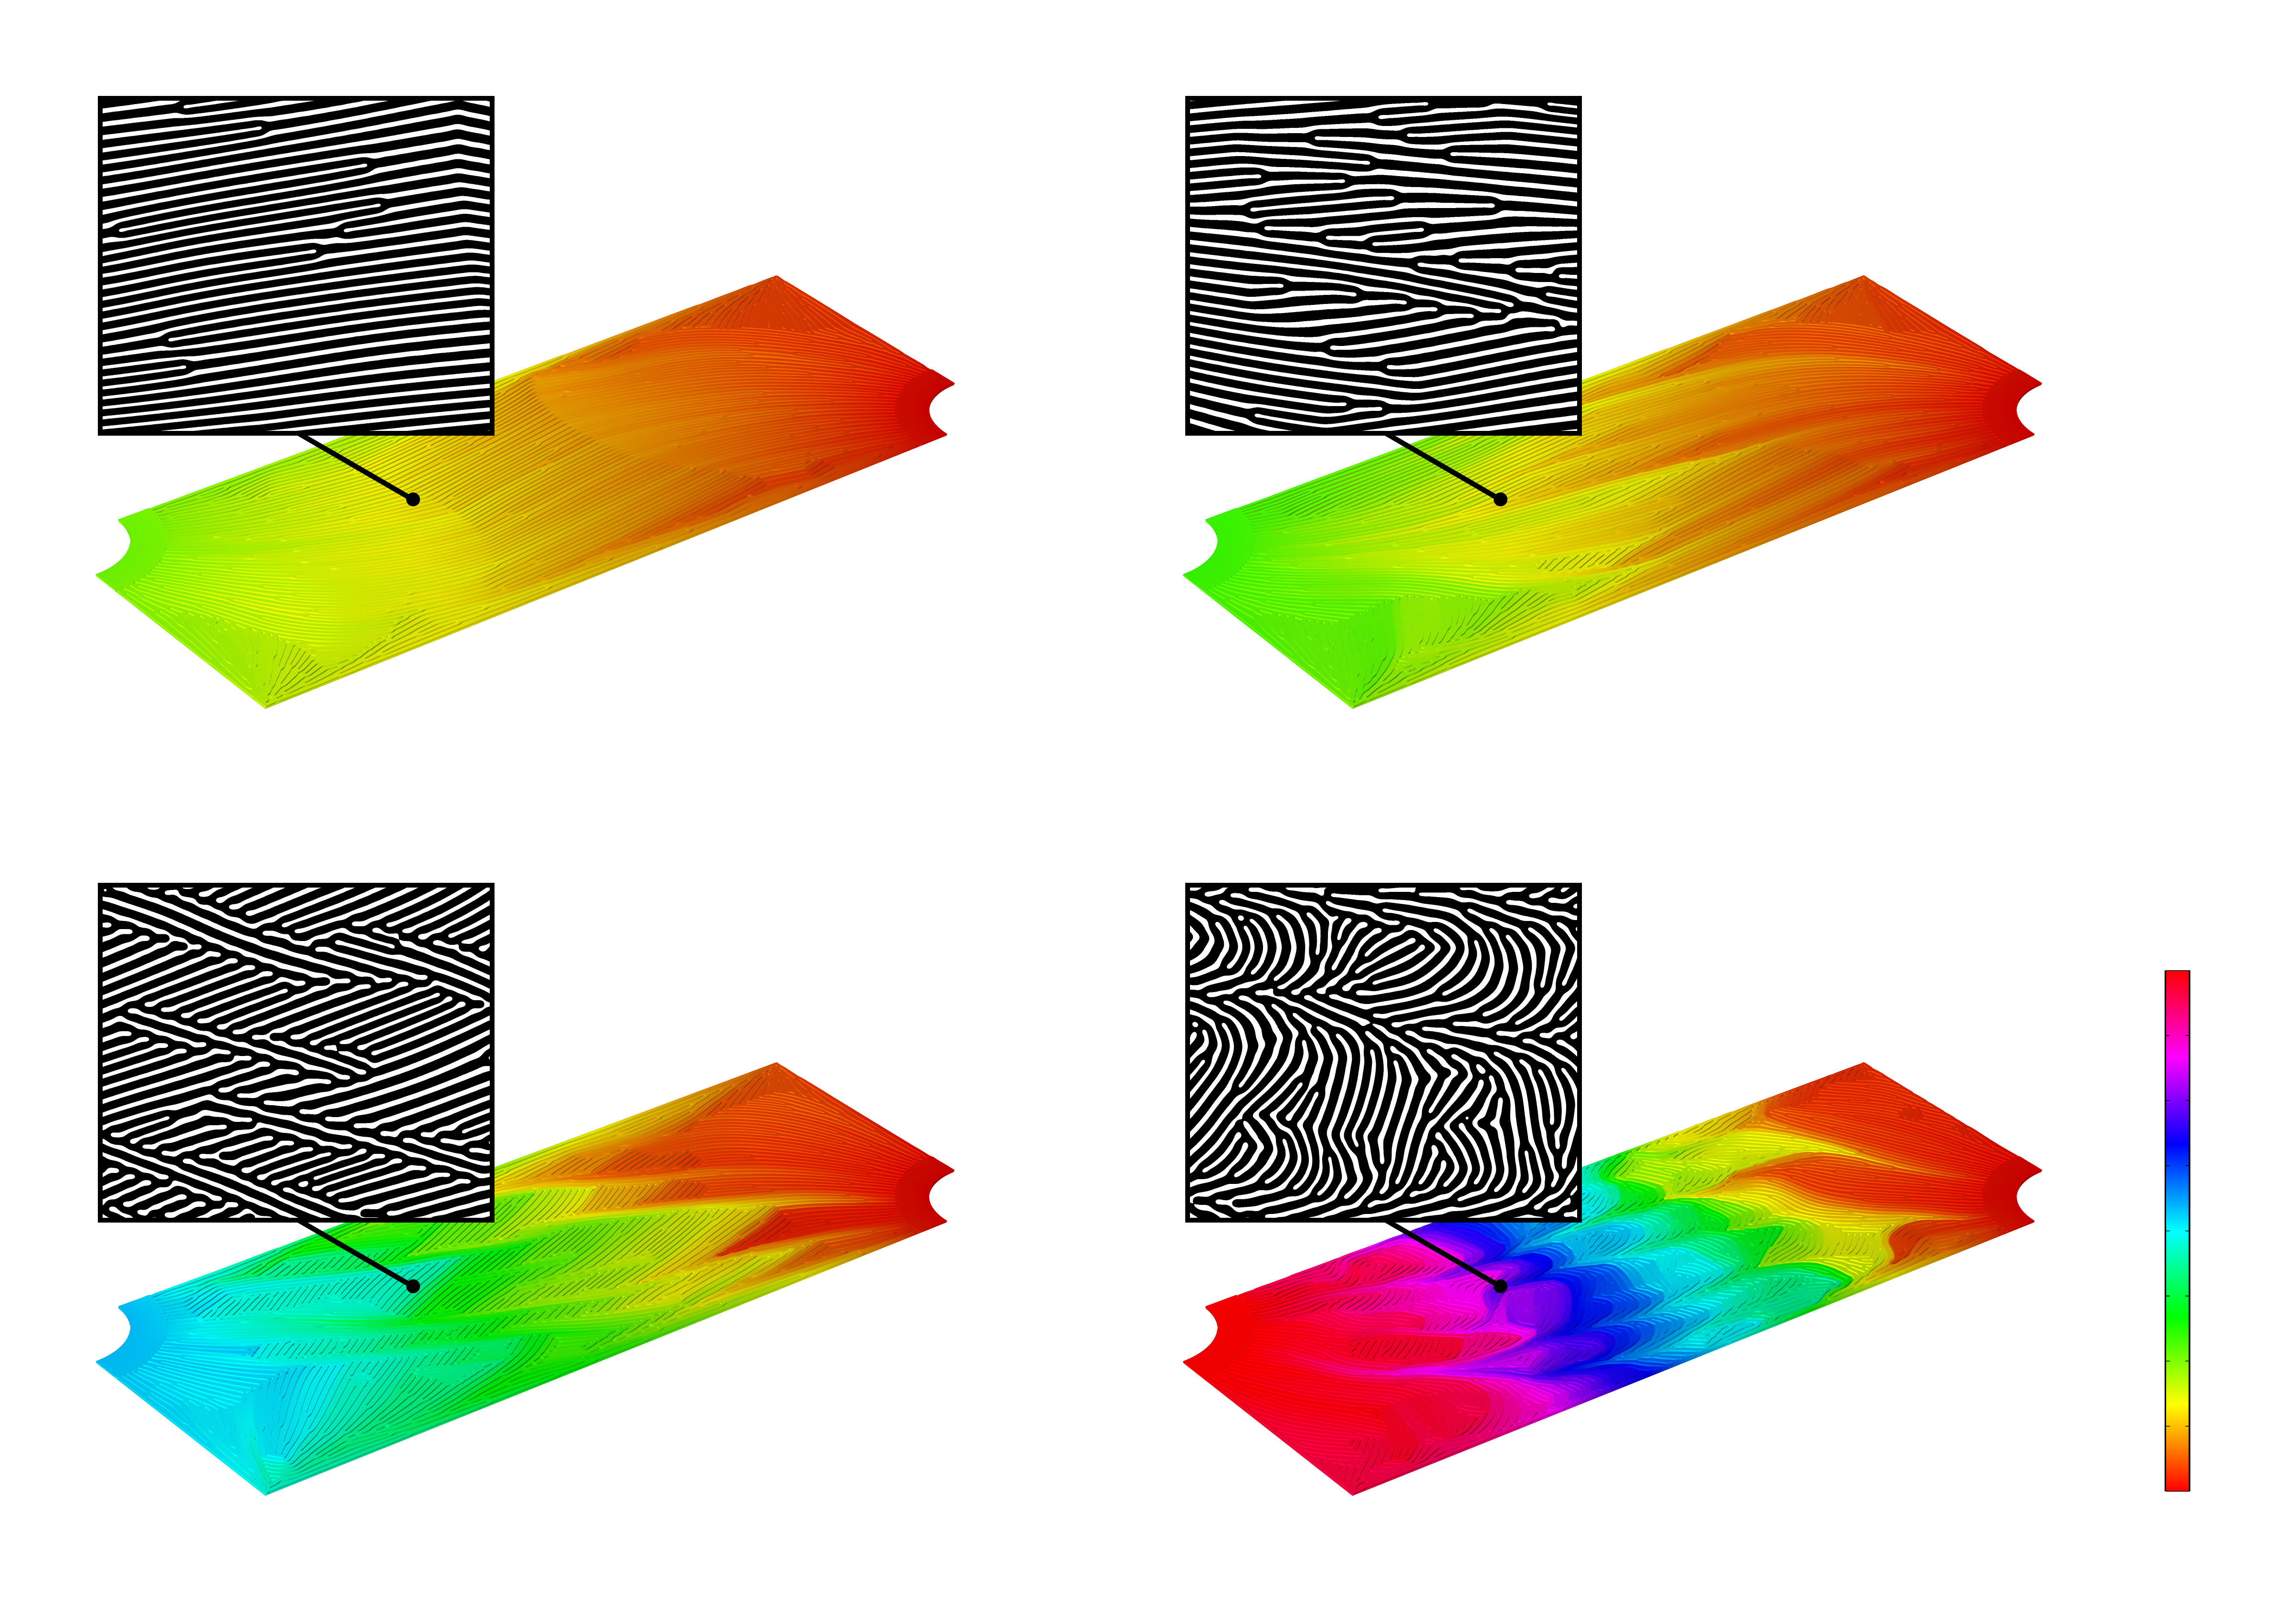 Matrice 2 x 2 di immagini di simulazione 3D che mostra le distribuzioni di pressione di quattro diversi progetti di microcanali in una scala di colori arcobaleno. Sopra ogni immagine di simulazione viene visualizzato un corrispondente rendering 2D ingrandito in bianco e nero di ciascuno dei progetti di microcanali.